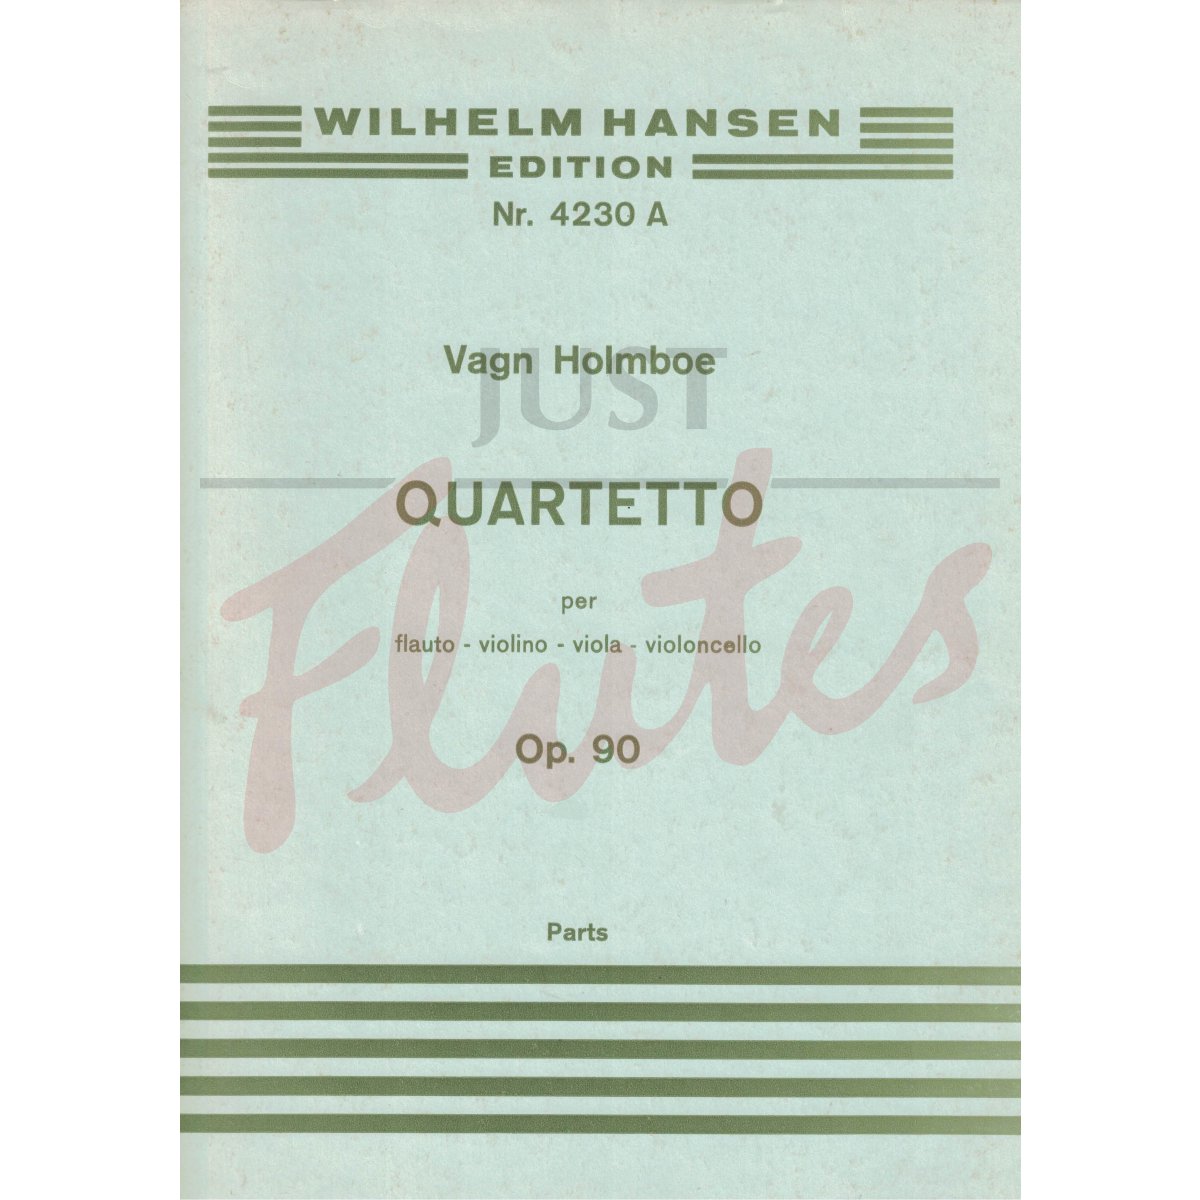 Quartetto for Flute, Violin, Viola and Cello